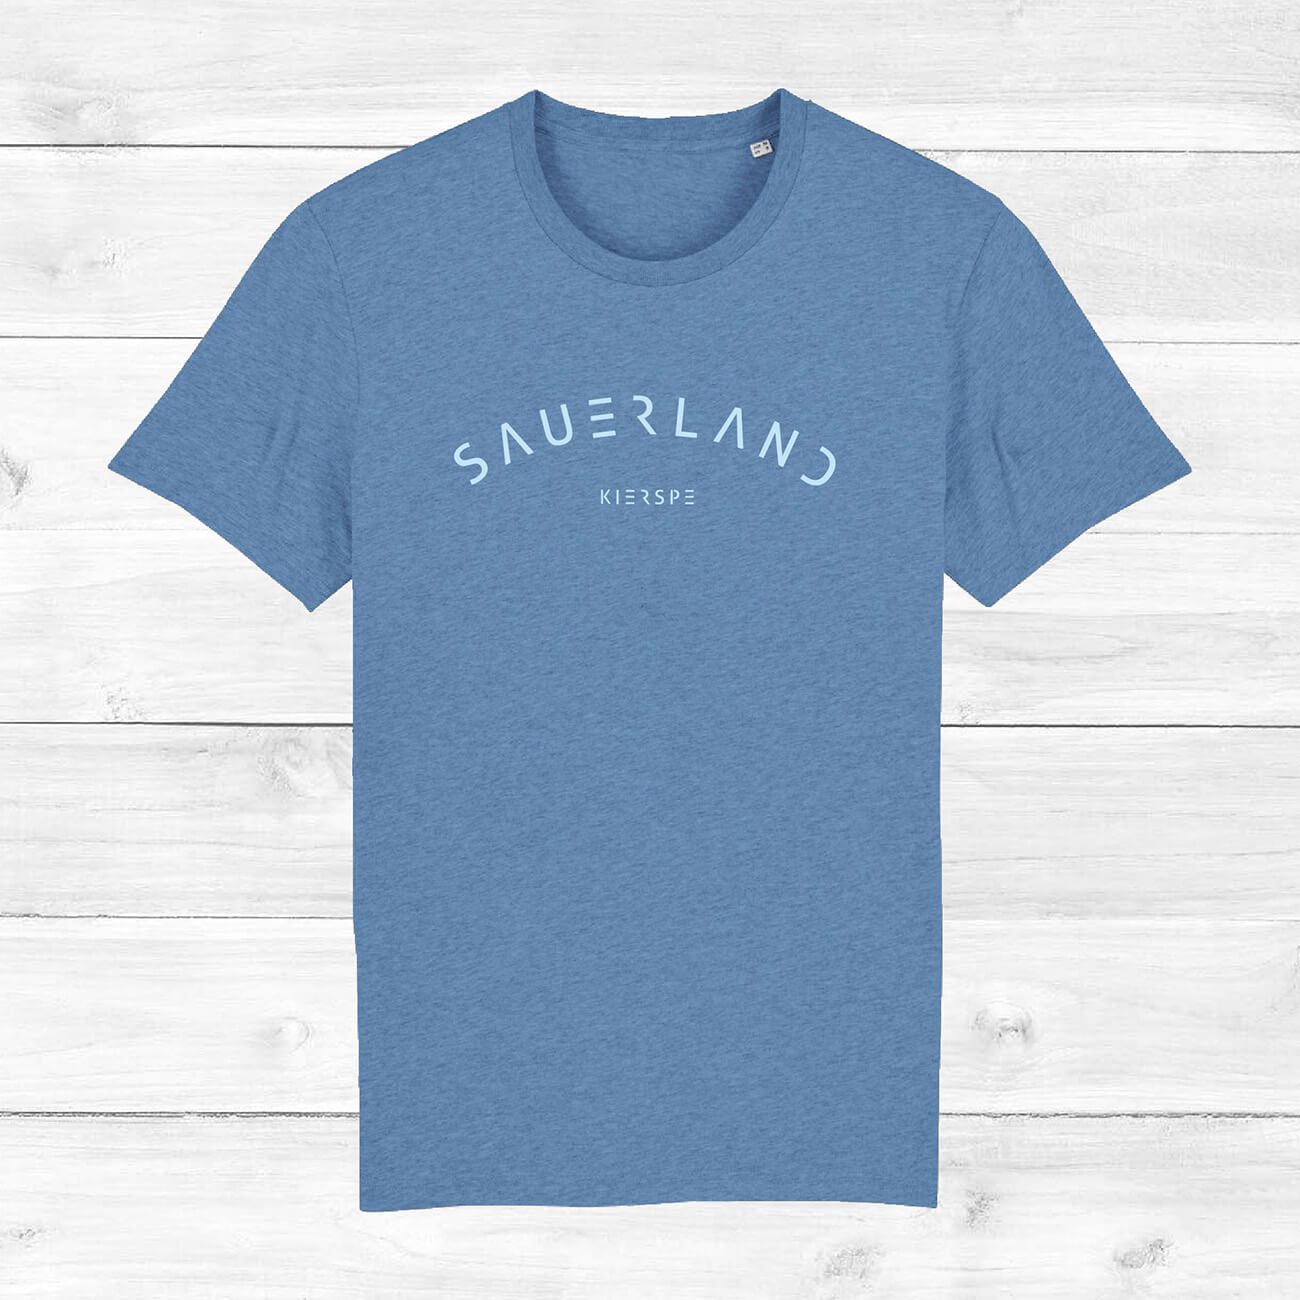 Mittelblaues T-Shirt mit leicht gerundetem Sauerland-Schriftzug liegt auf einem Holzhintergrund. In der Mitte unter dem Sauerland-Schriftzug ist der Dorfname Kierspe eingedruckt. Der Aufdruck ist hellblau.